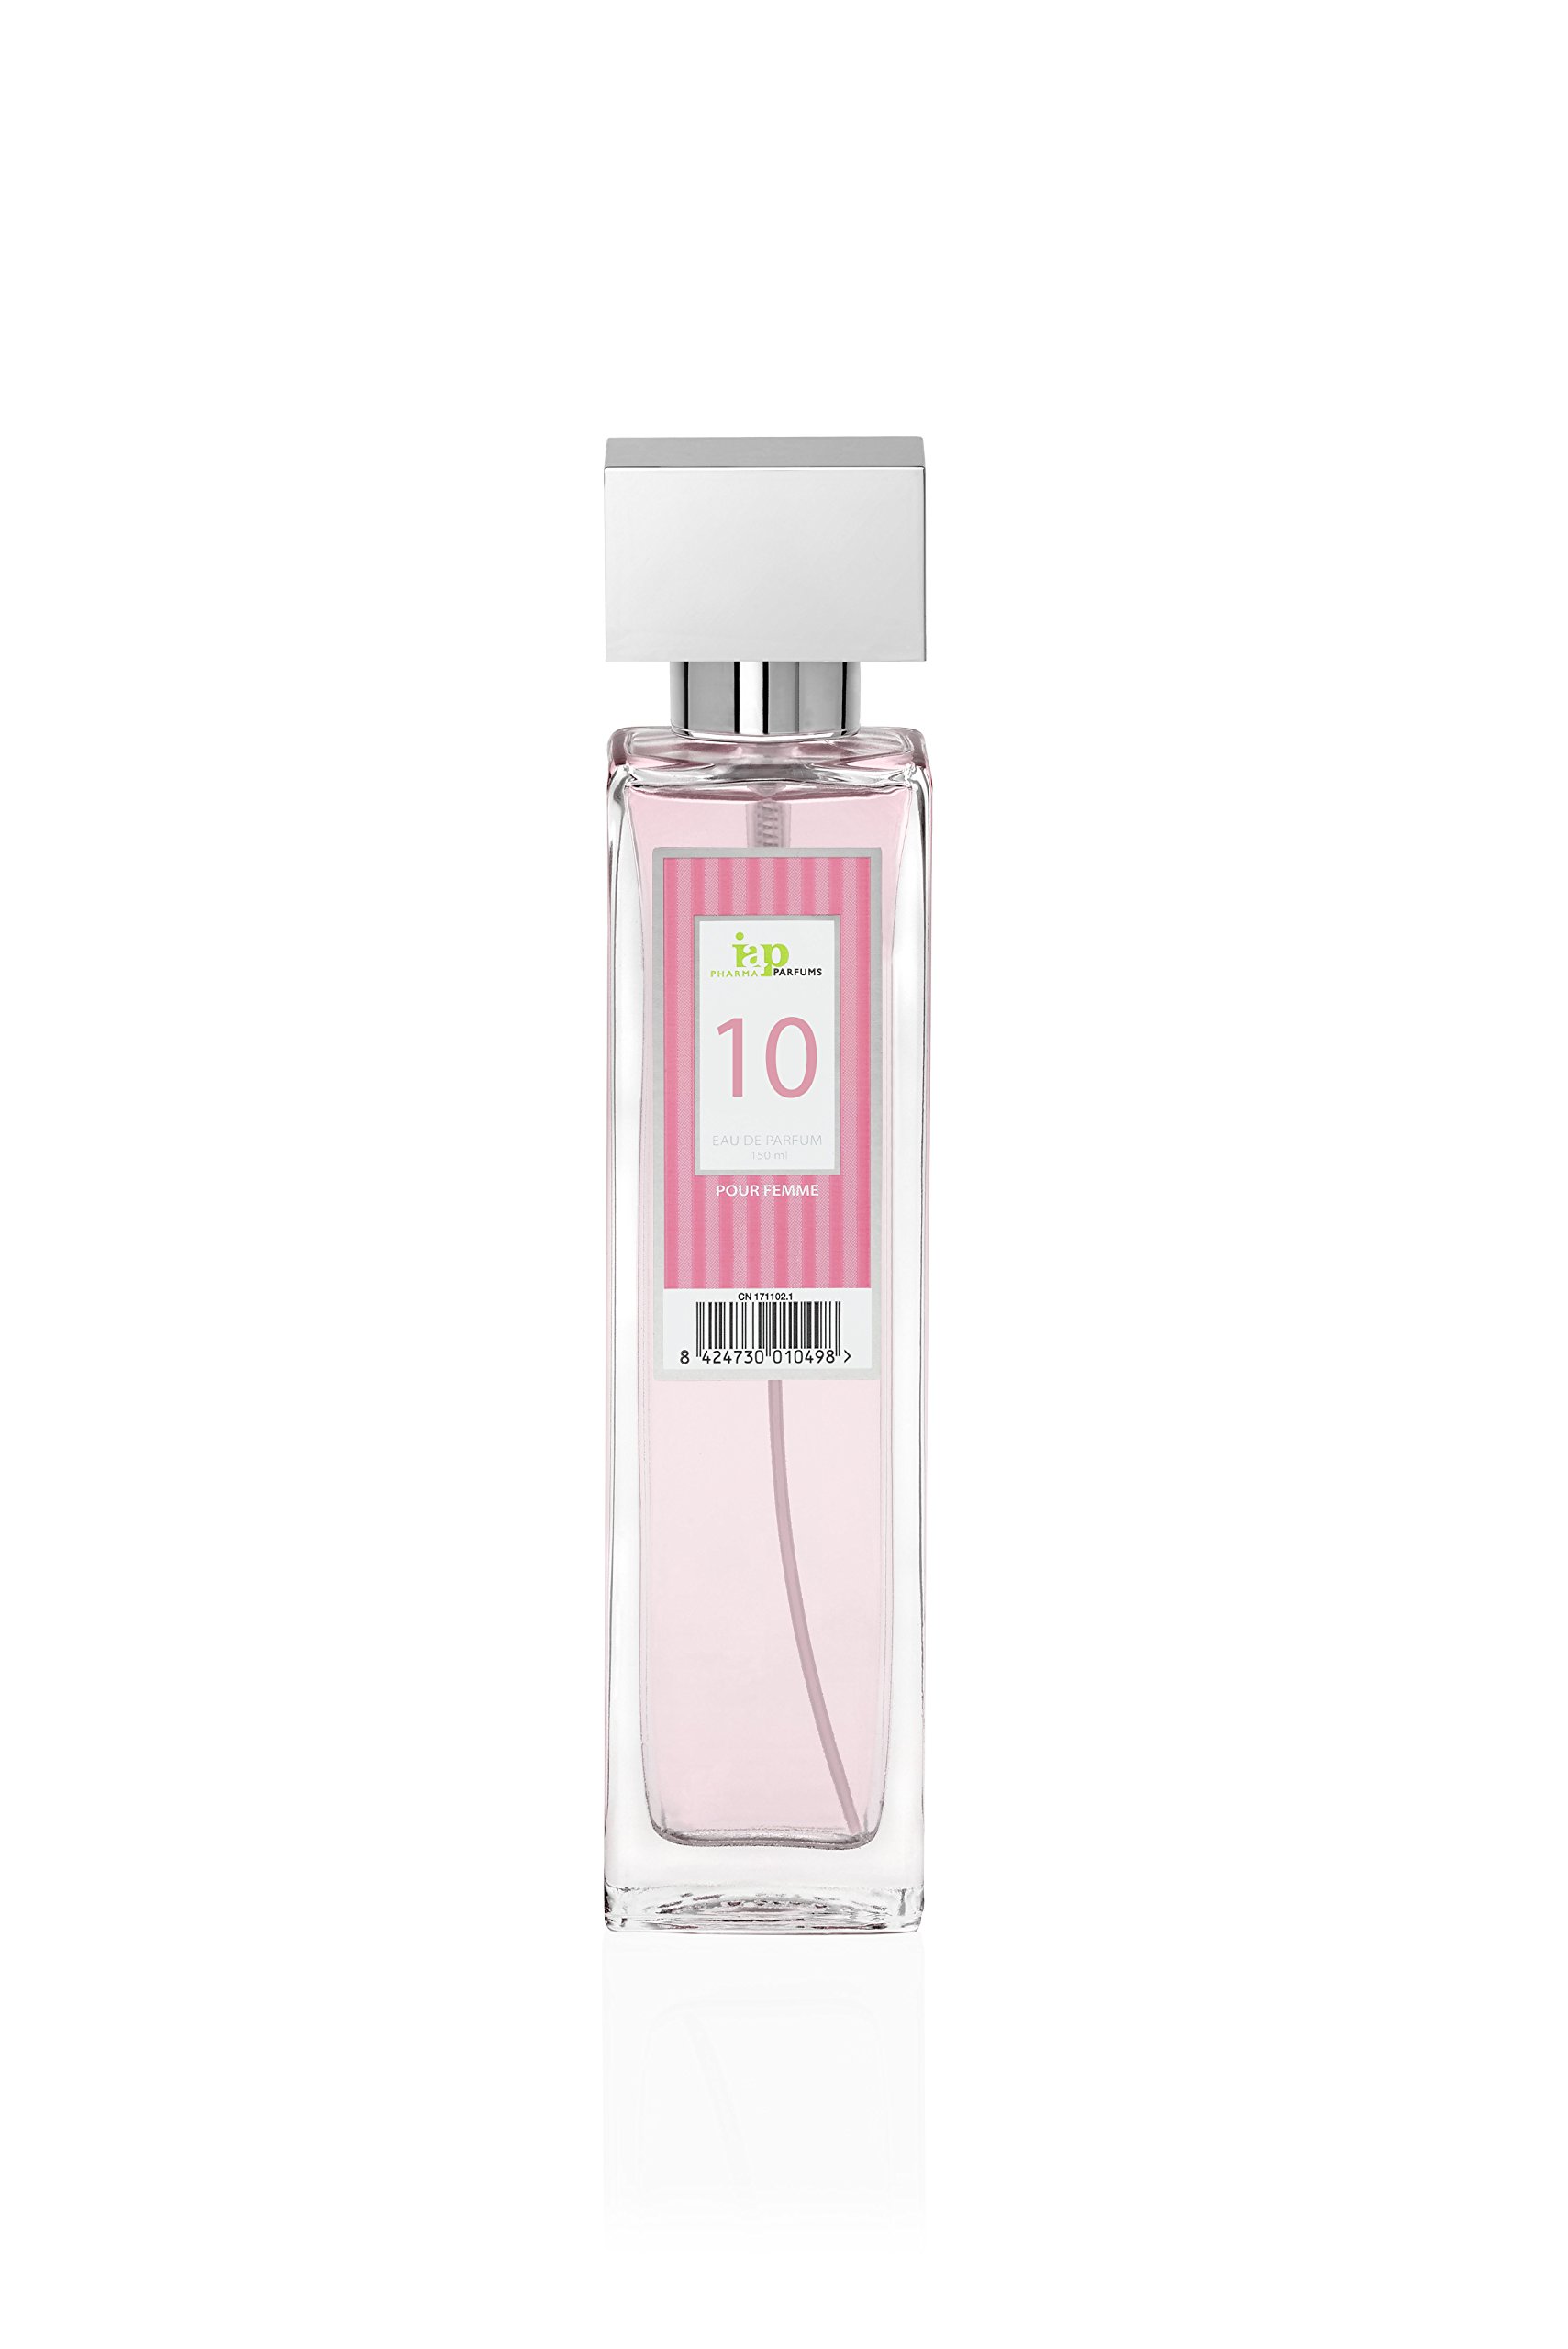 prix de gros IAP Pharma Parfums nº 10 - Eau de Parfum V